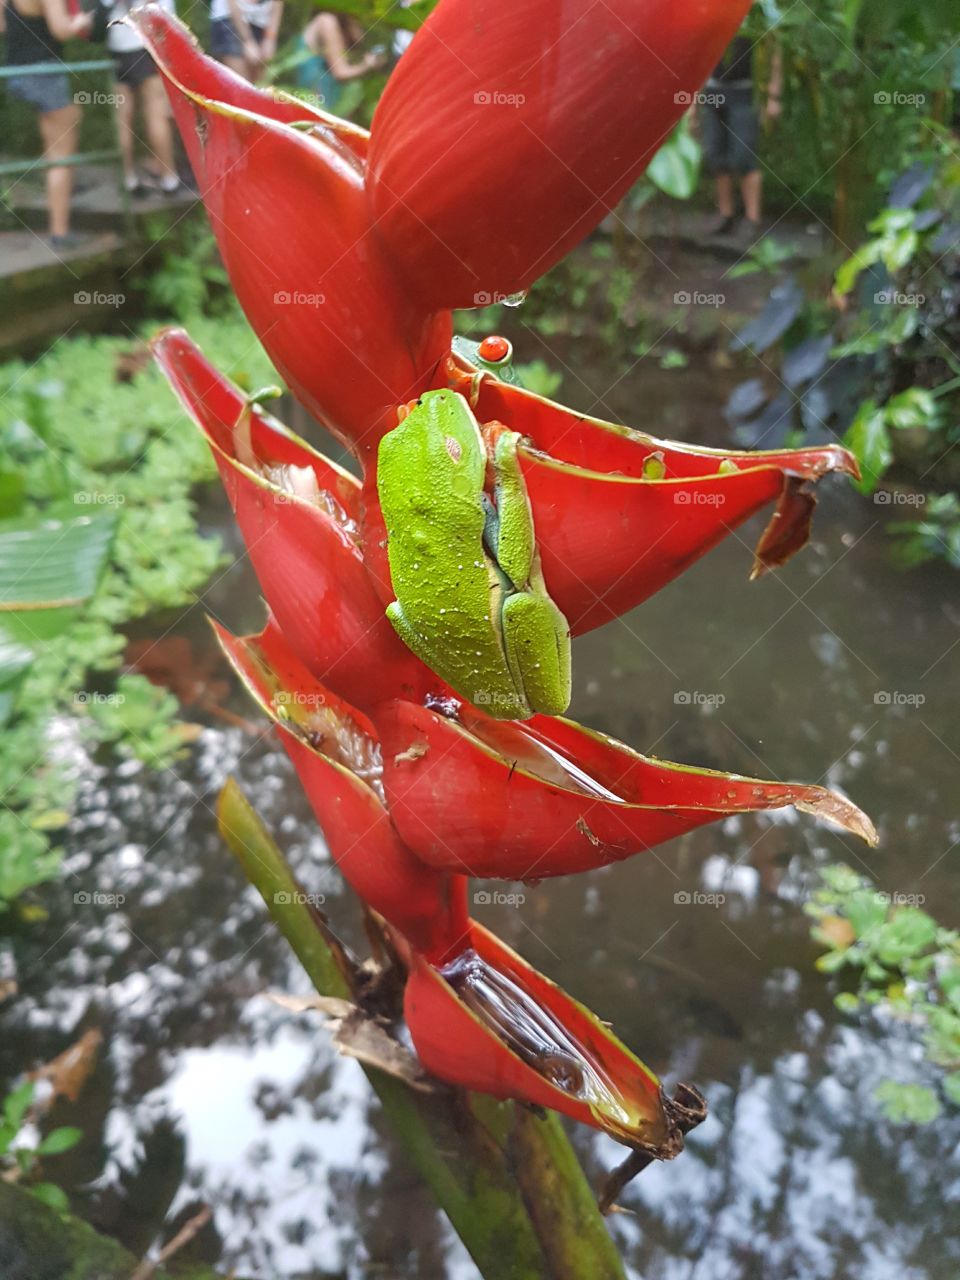 Frogs in La Fortuna, Costa Rica